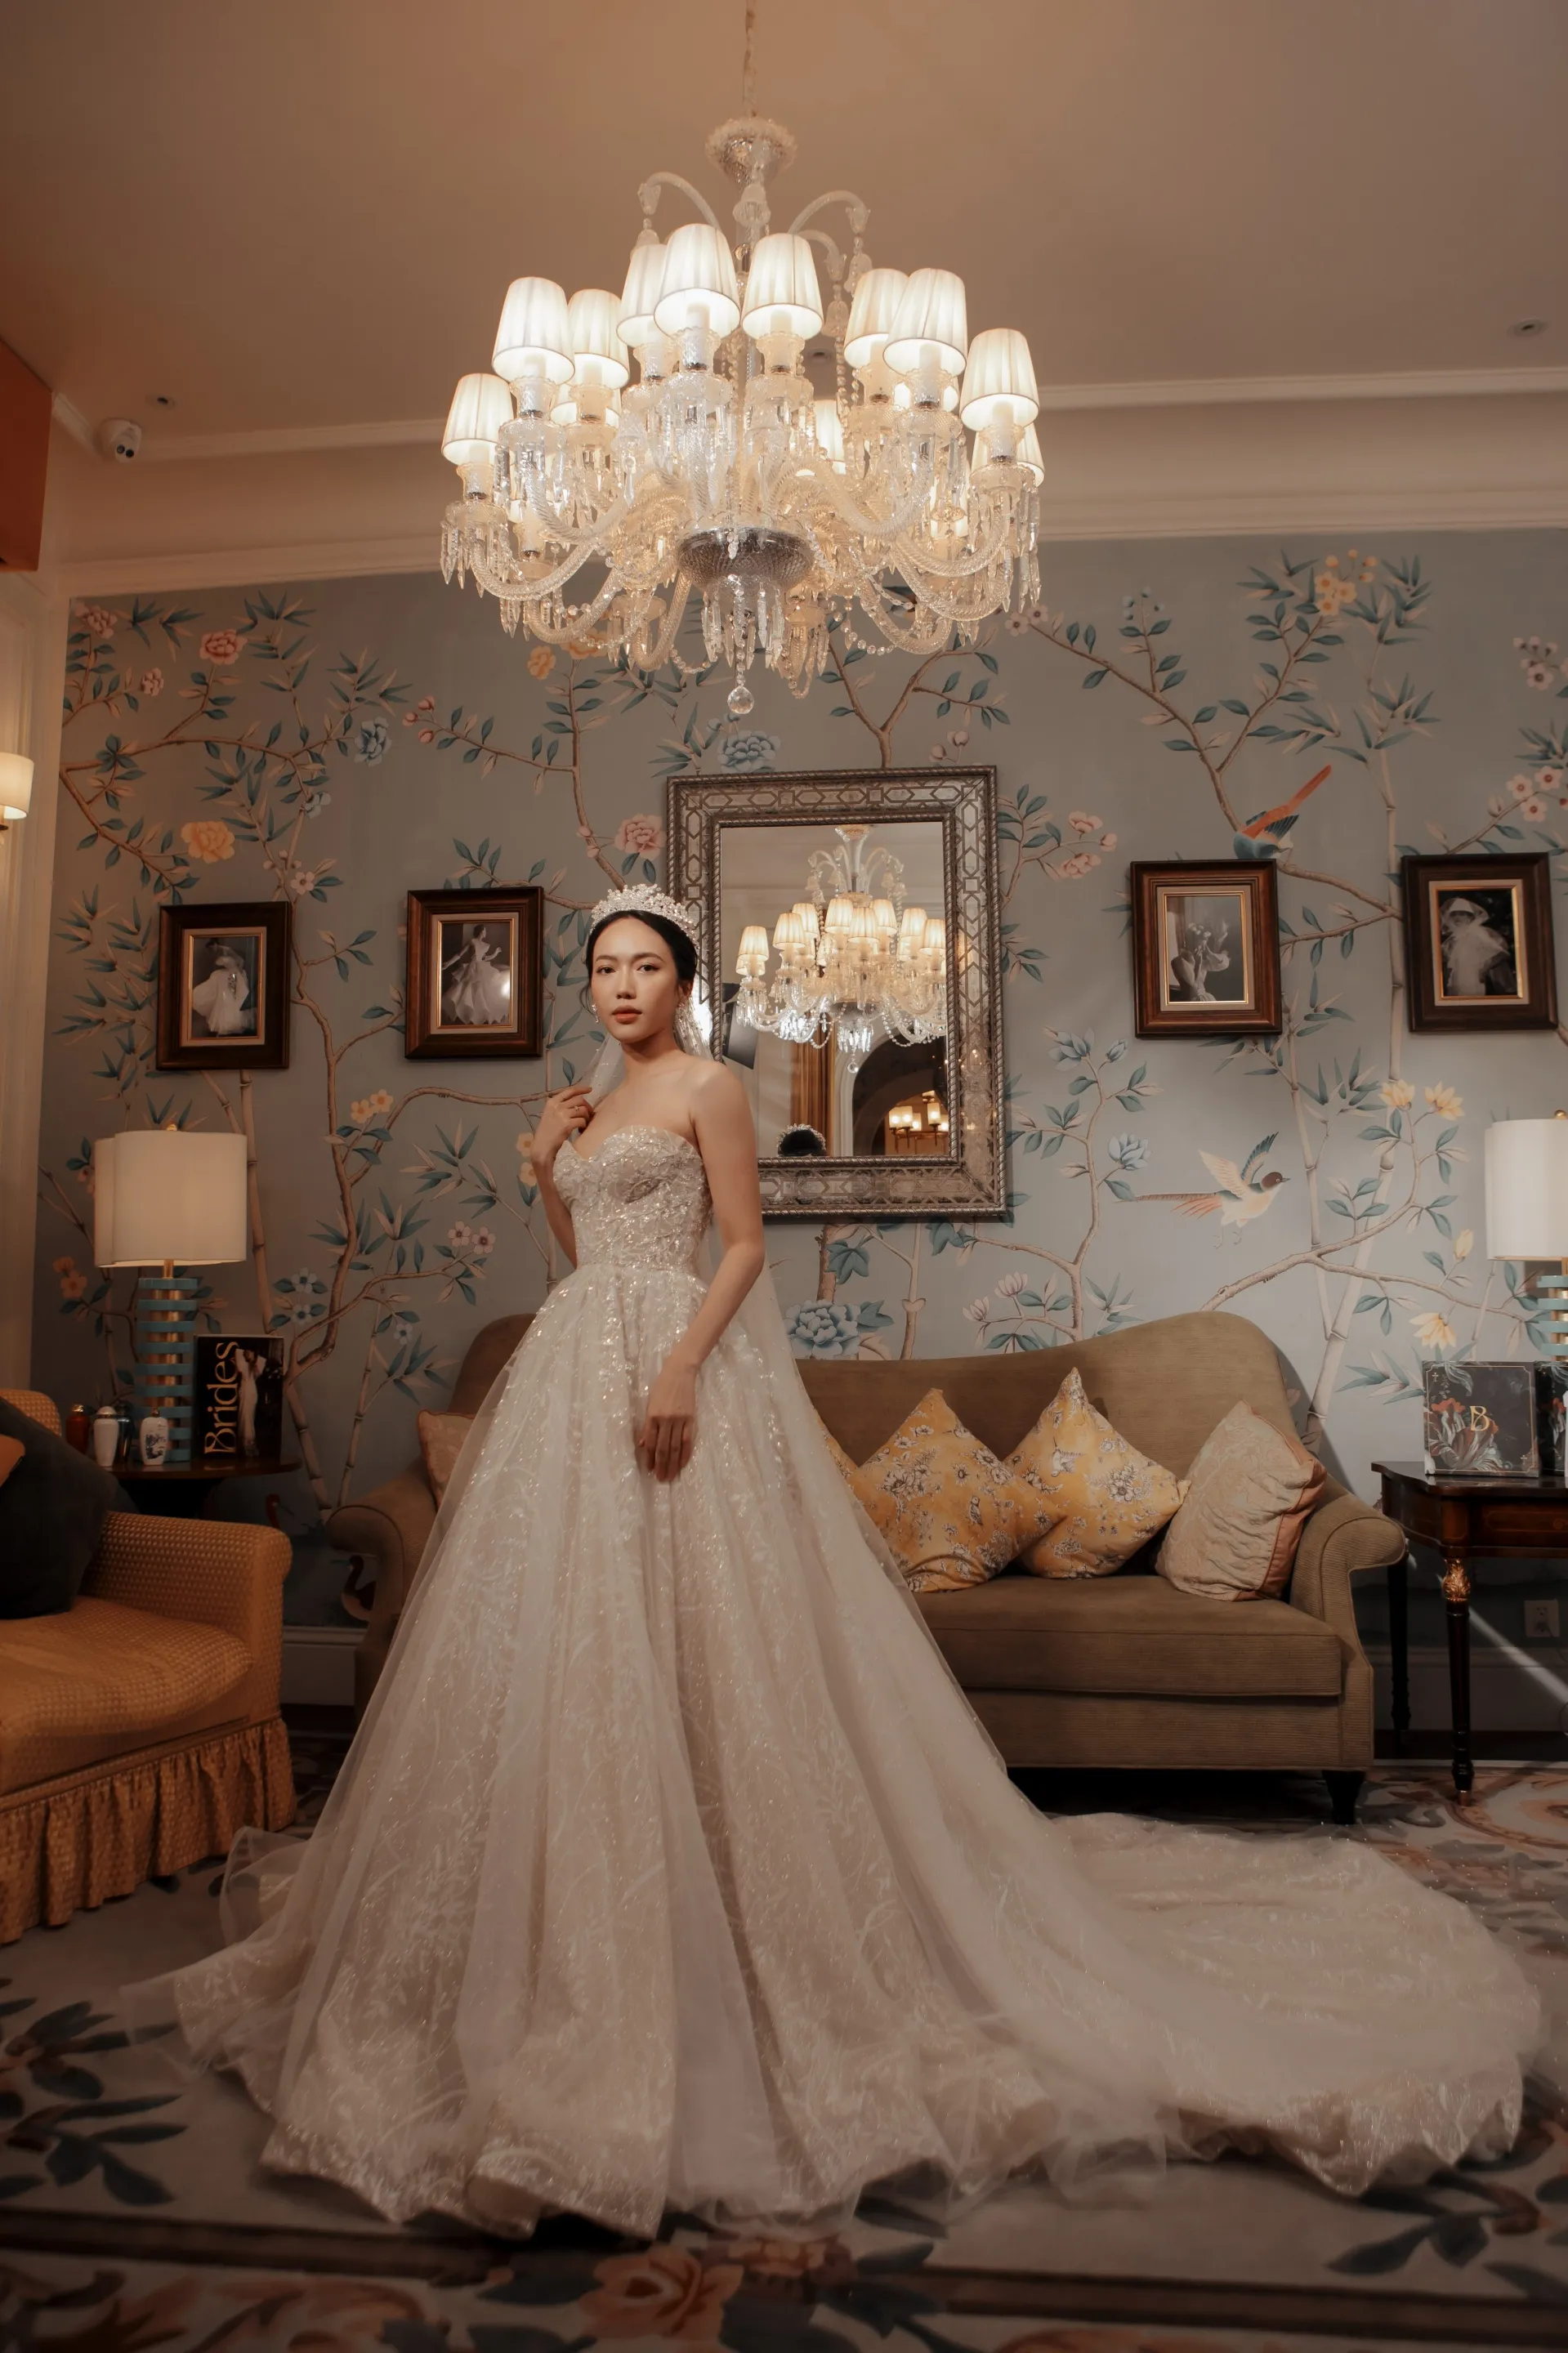 Rò rỉ hình ảnh váy cưới lộng lẫy của Diệu Nhi: Nữ diễn viên xứng danh cô dâu tháng 10!